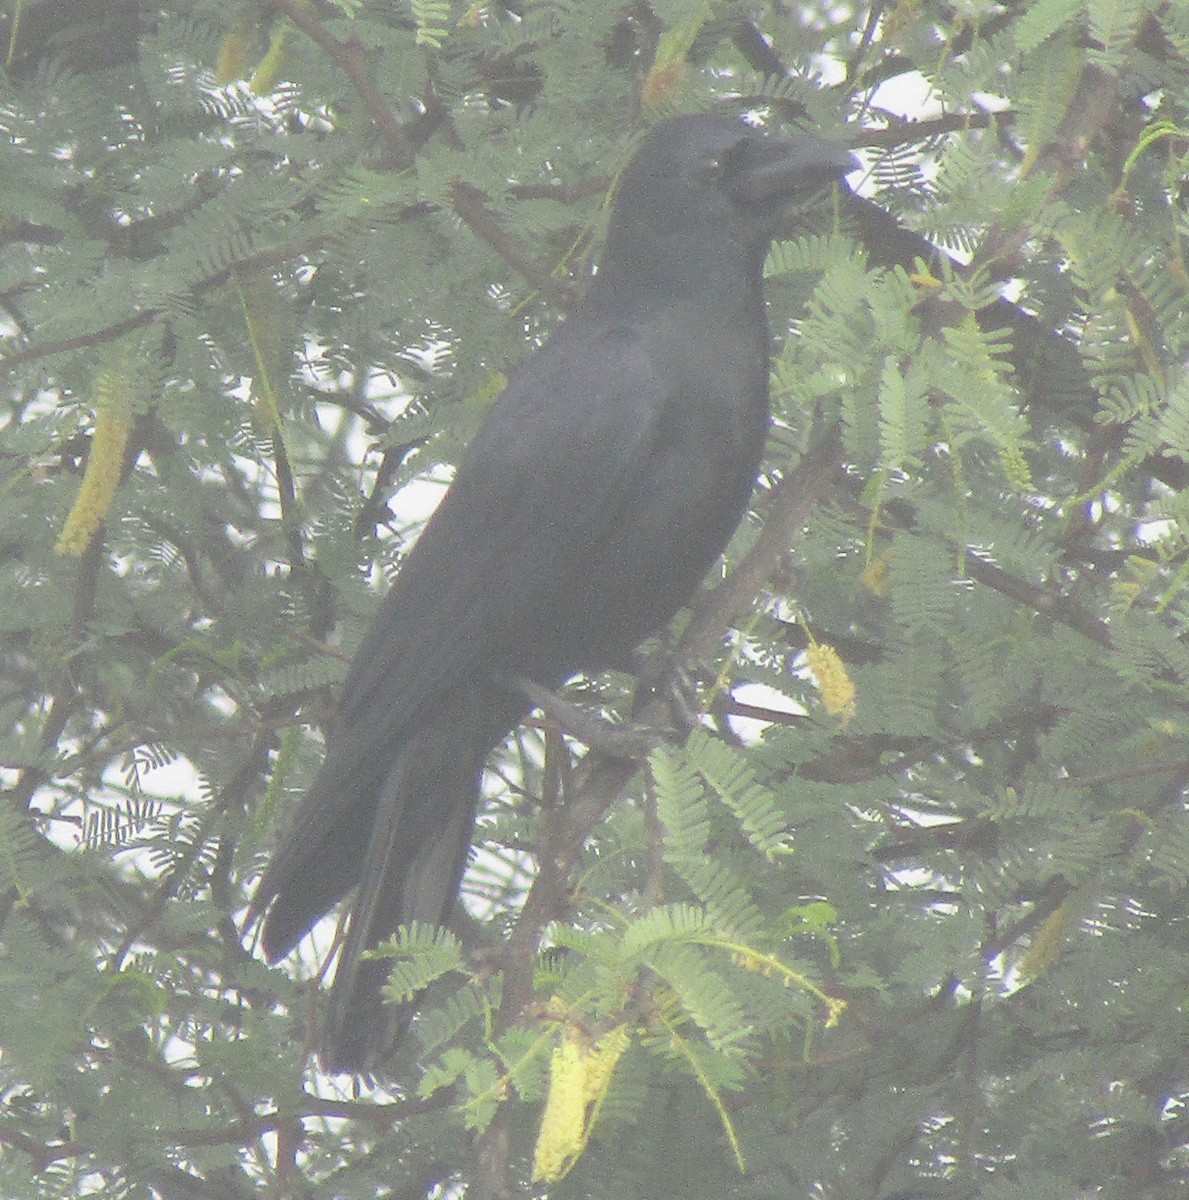 Large-billed Crow - sushil saxena